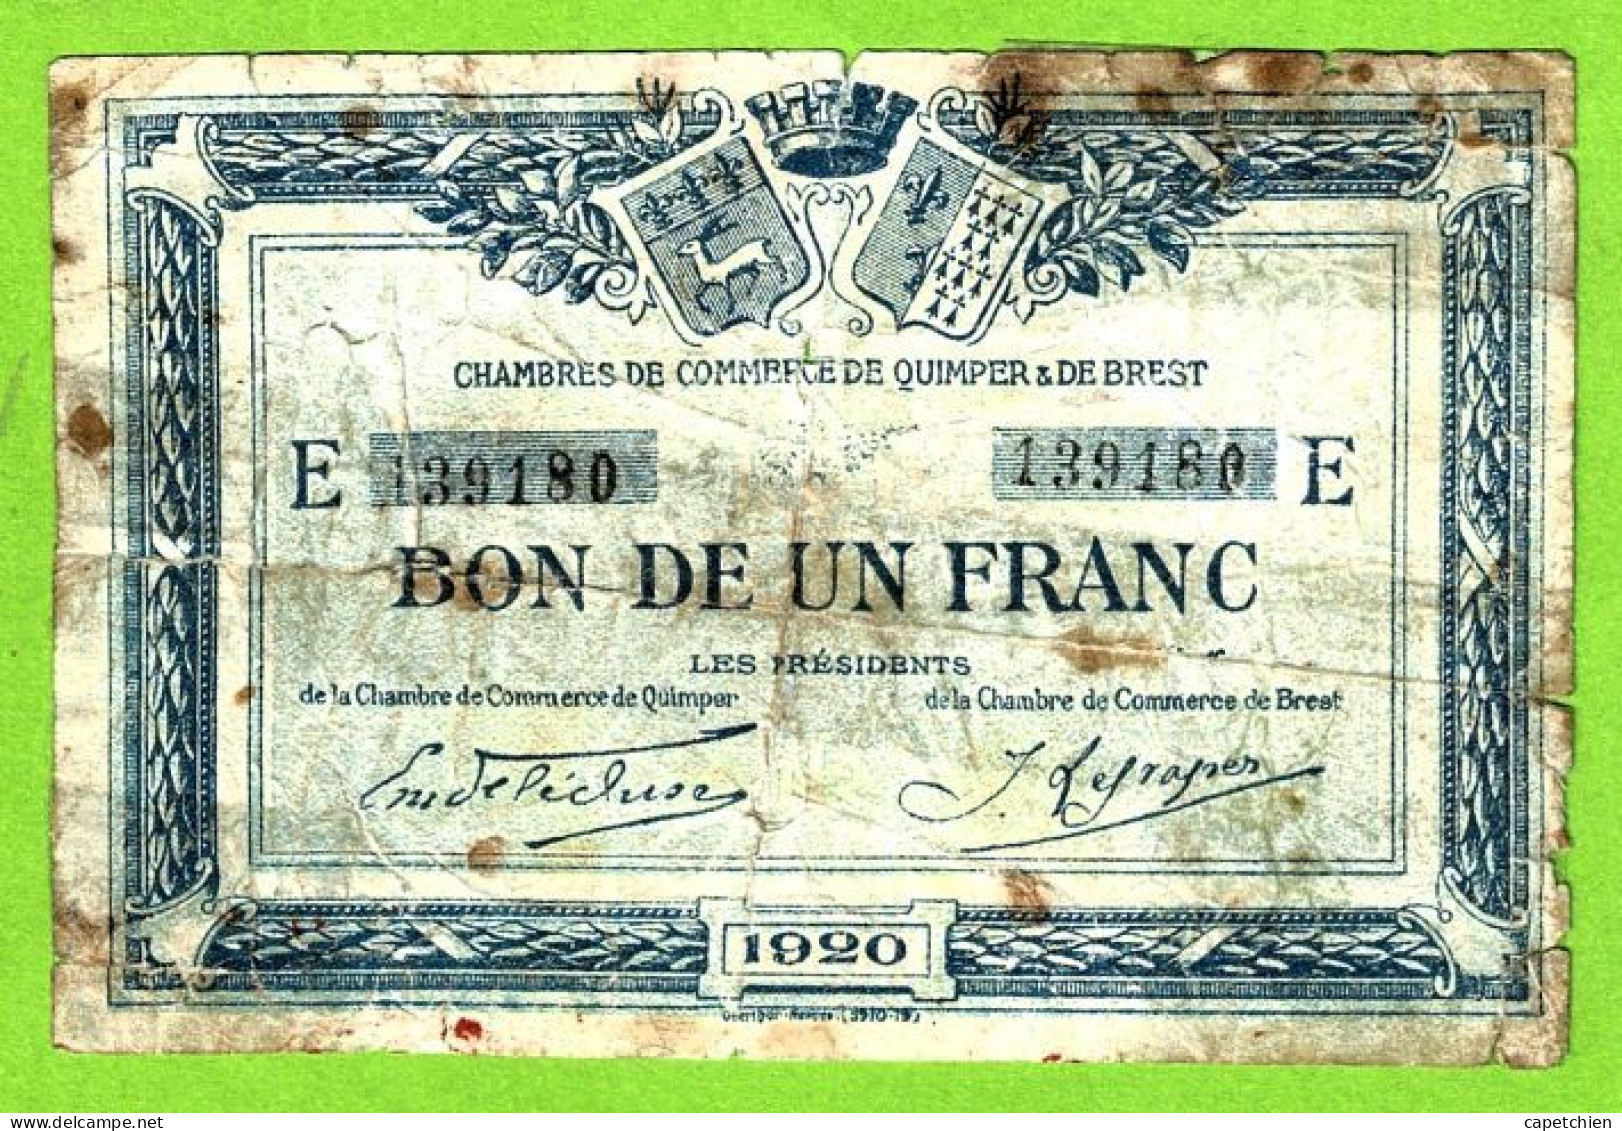 FRANCE/ CHAMBRES DE COMMERCE QUIMPER & BREST/ BON De 1 FRANC / 1920 / 139180 / SERIE E - Handelskammer